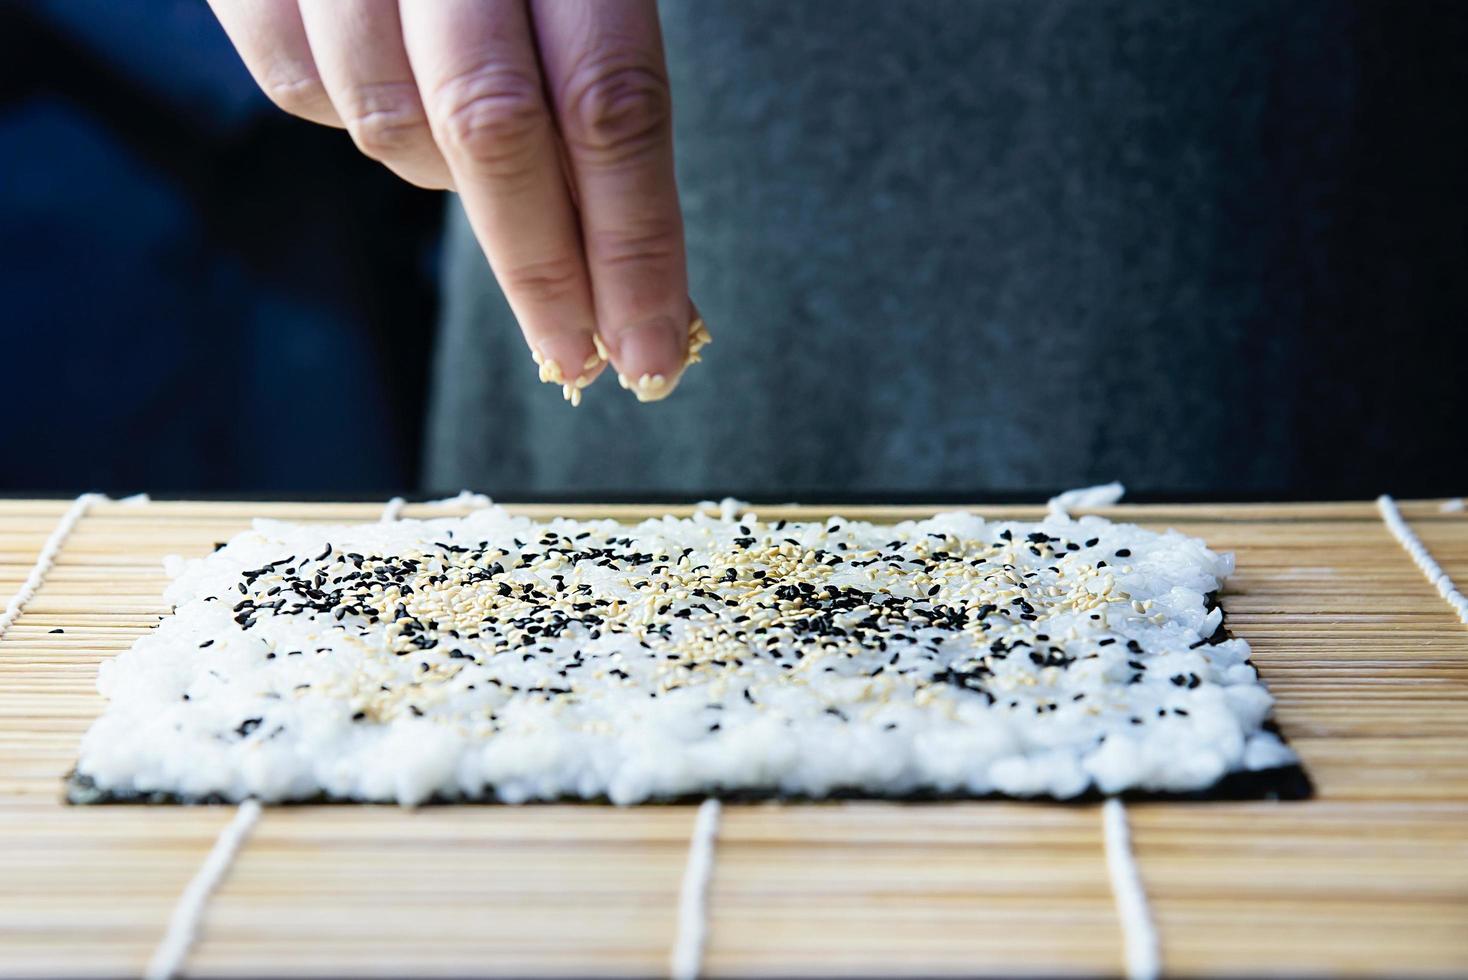 Chef preparando rollo de sushi sobre fondo de mesa negra - gente con plato favorito concepto de comida japonesa foto